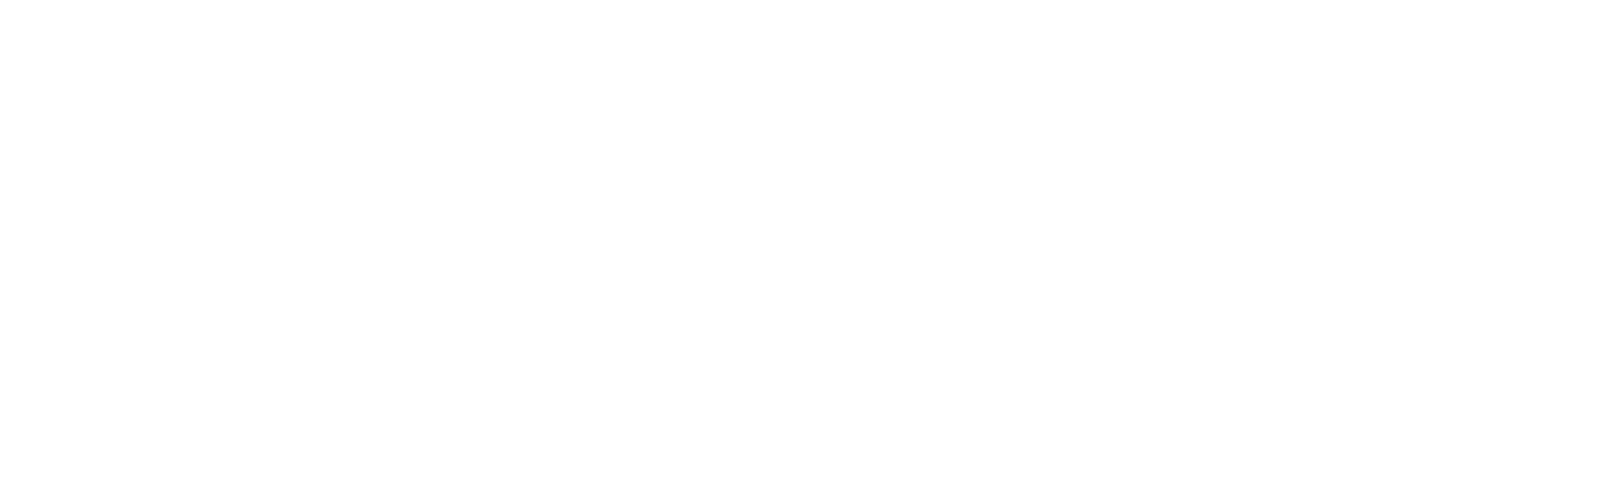 katydid logo